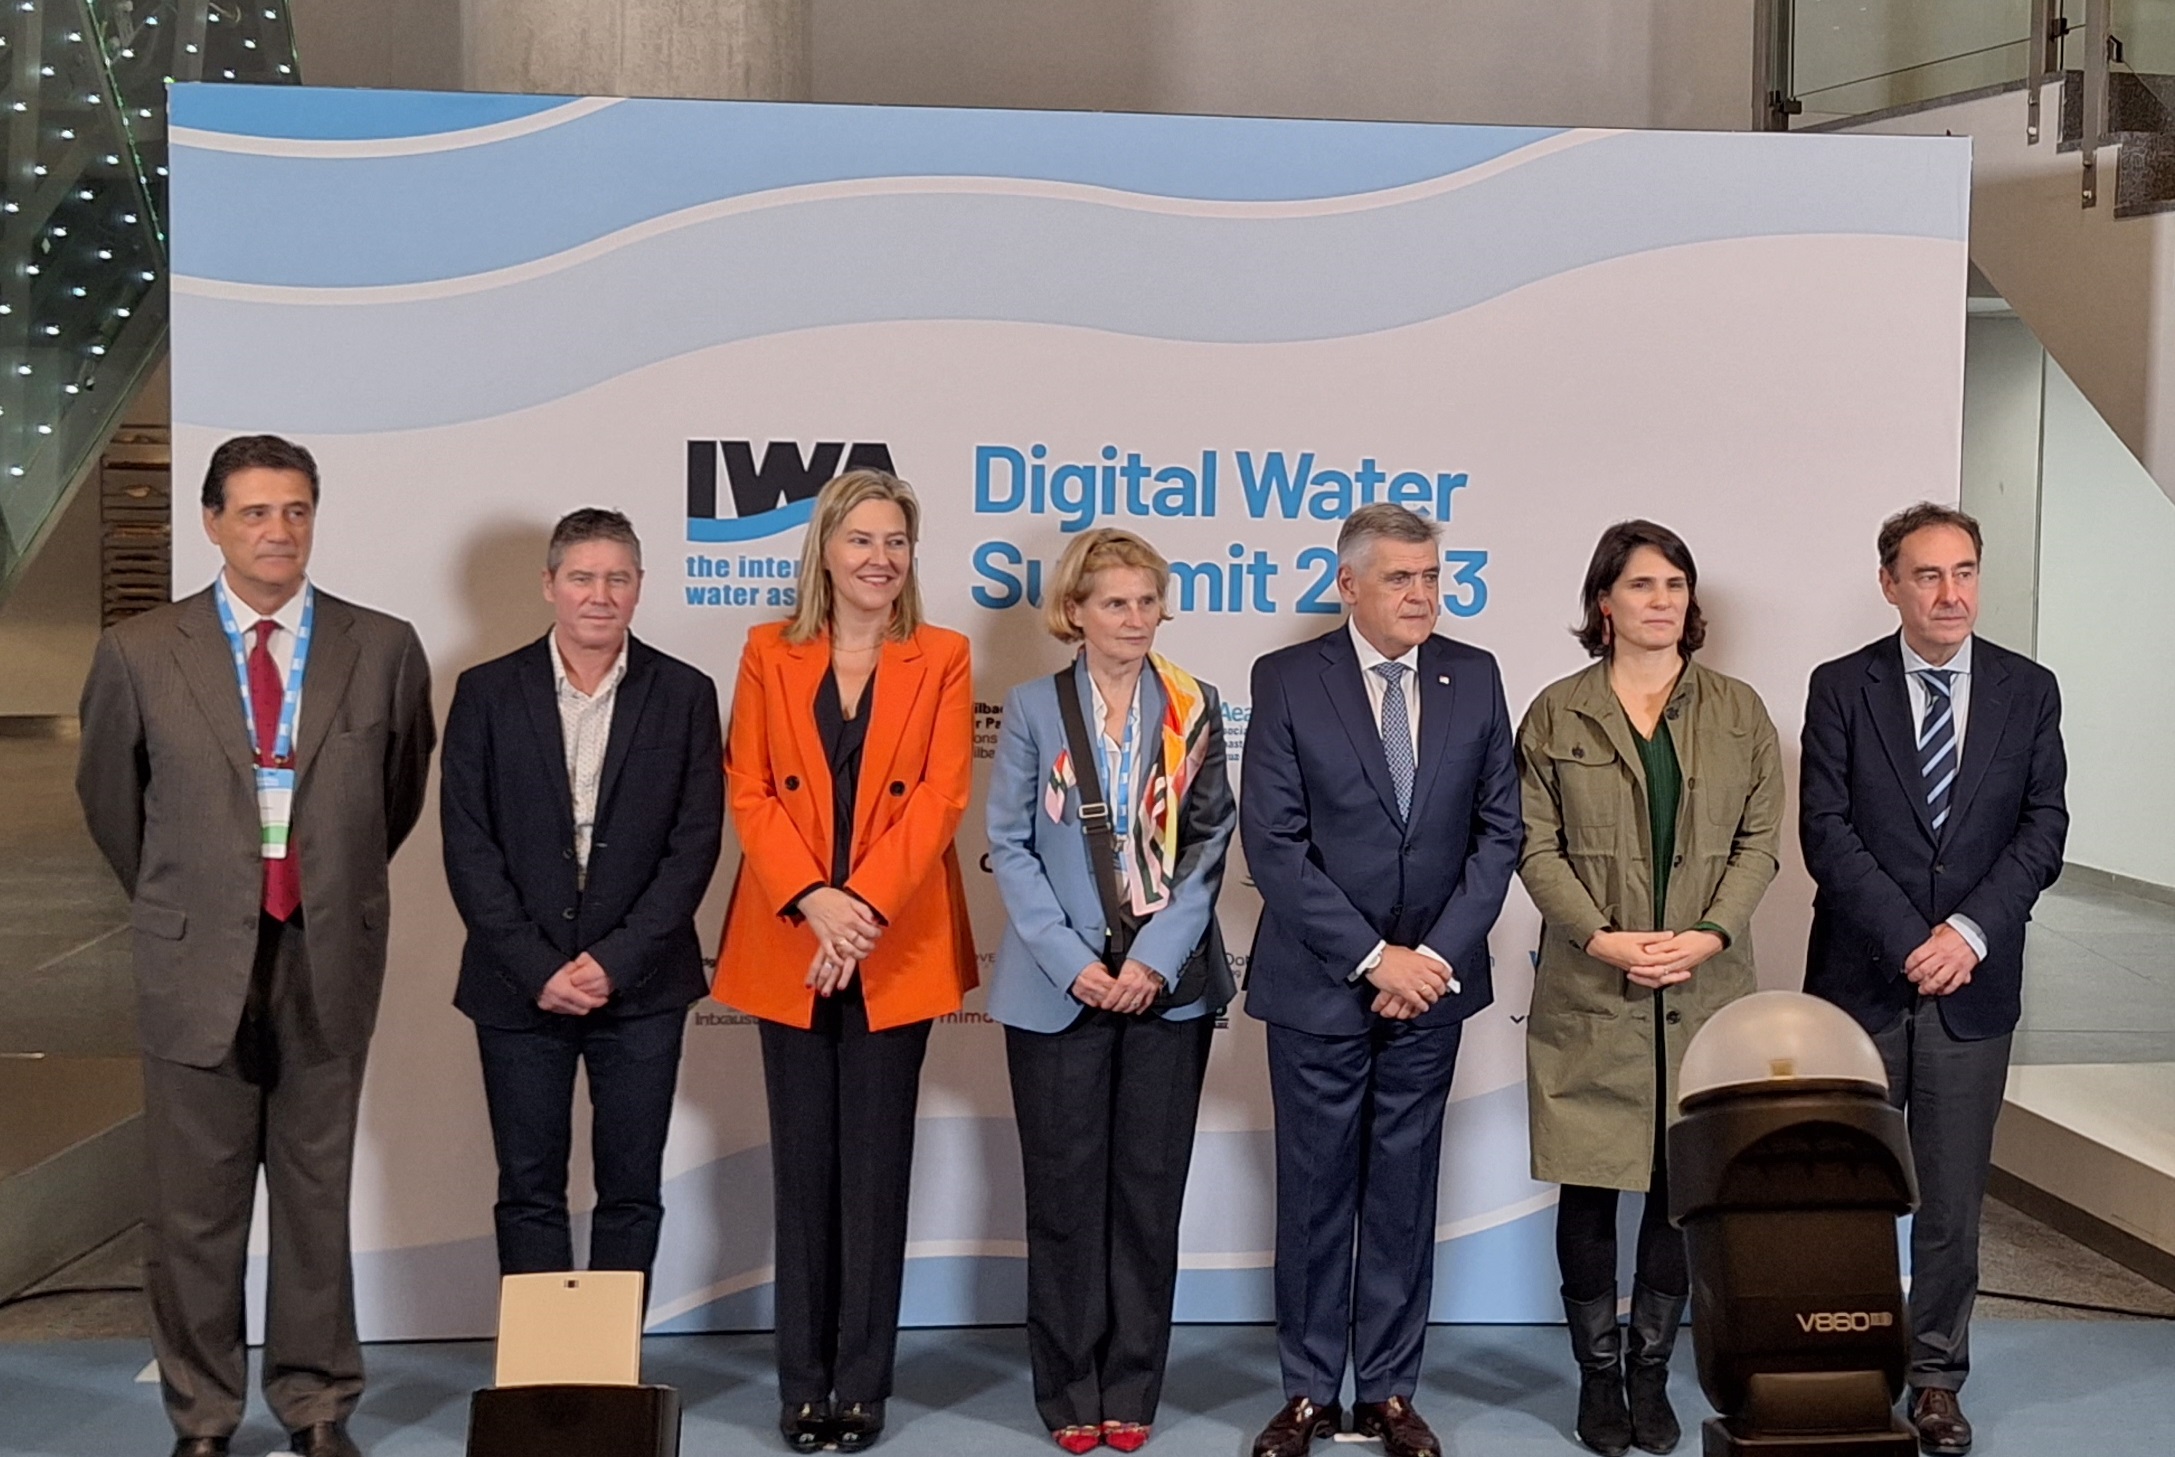 Arranca el congreso IWA Digital Water Summit que reúne en Bilbao a cerca de 400 expertos mundiales en digitalización del sector del agua